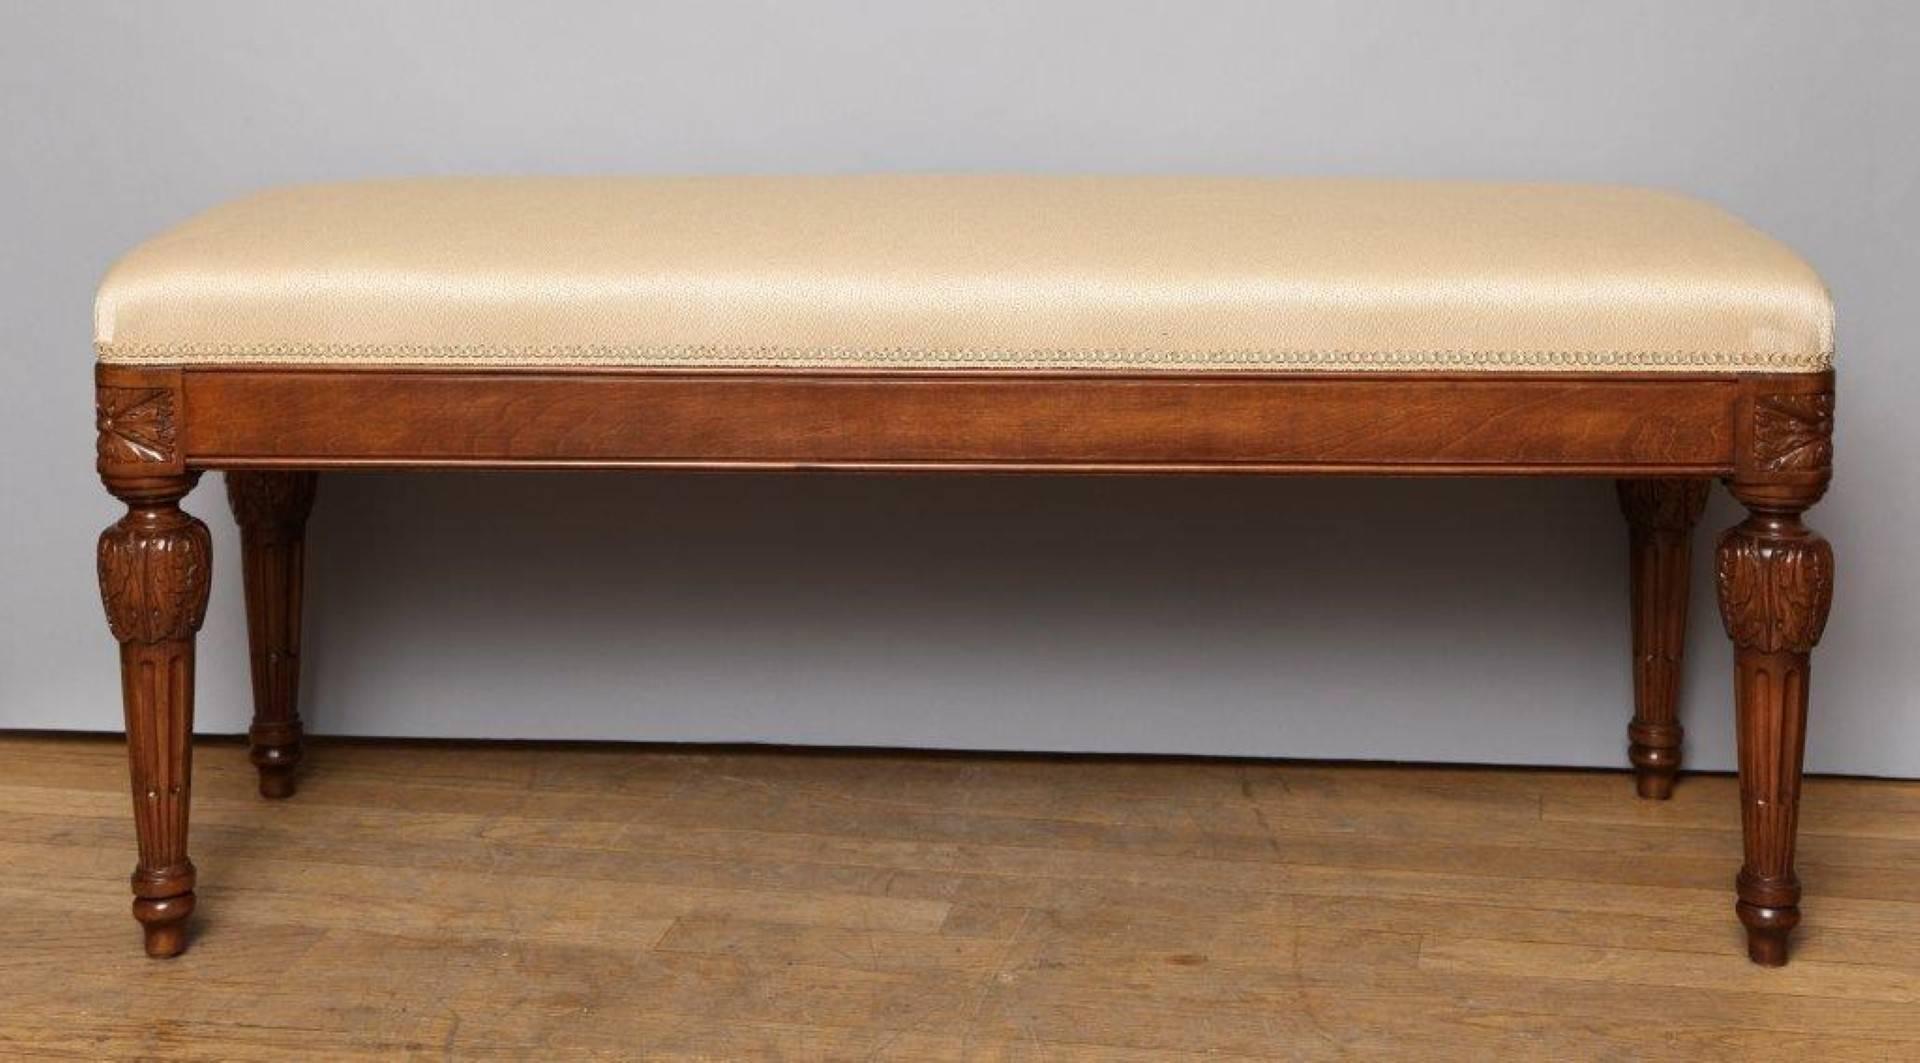 Die von David Duncan entworfene Daphne Bench besteht aus einem rechteckigen Ahornholzrahmen mit gepolsterter Sitzfläche. Mit abgerundeten Ecken mit exquisit detaillierten, handgeschnitzten Eckrosetten über runden, spitz zulaufenden, kannelierten